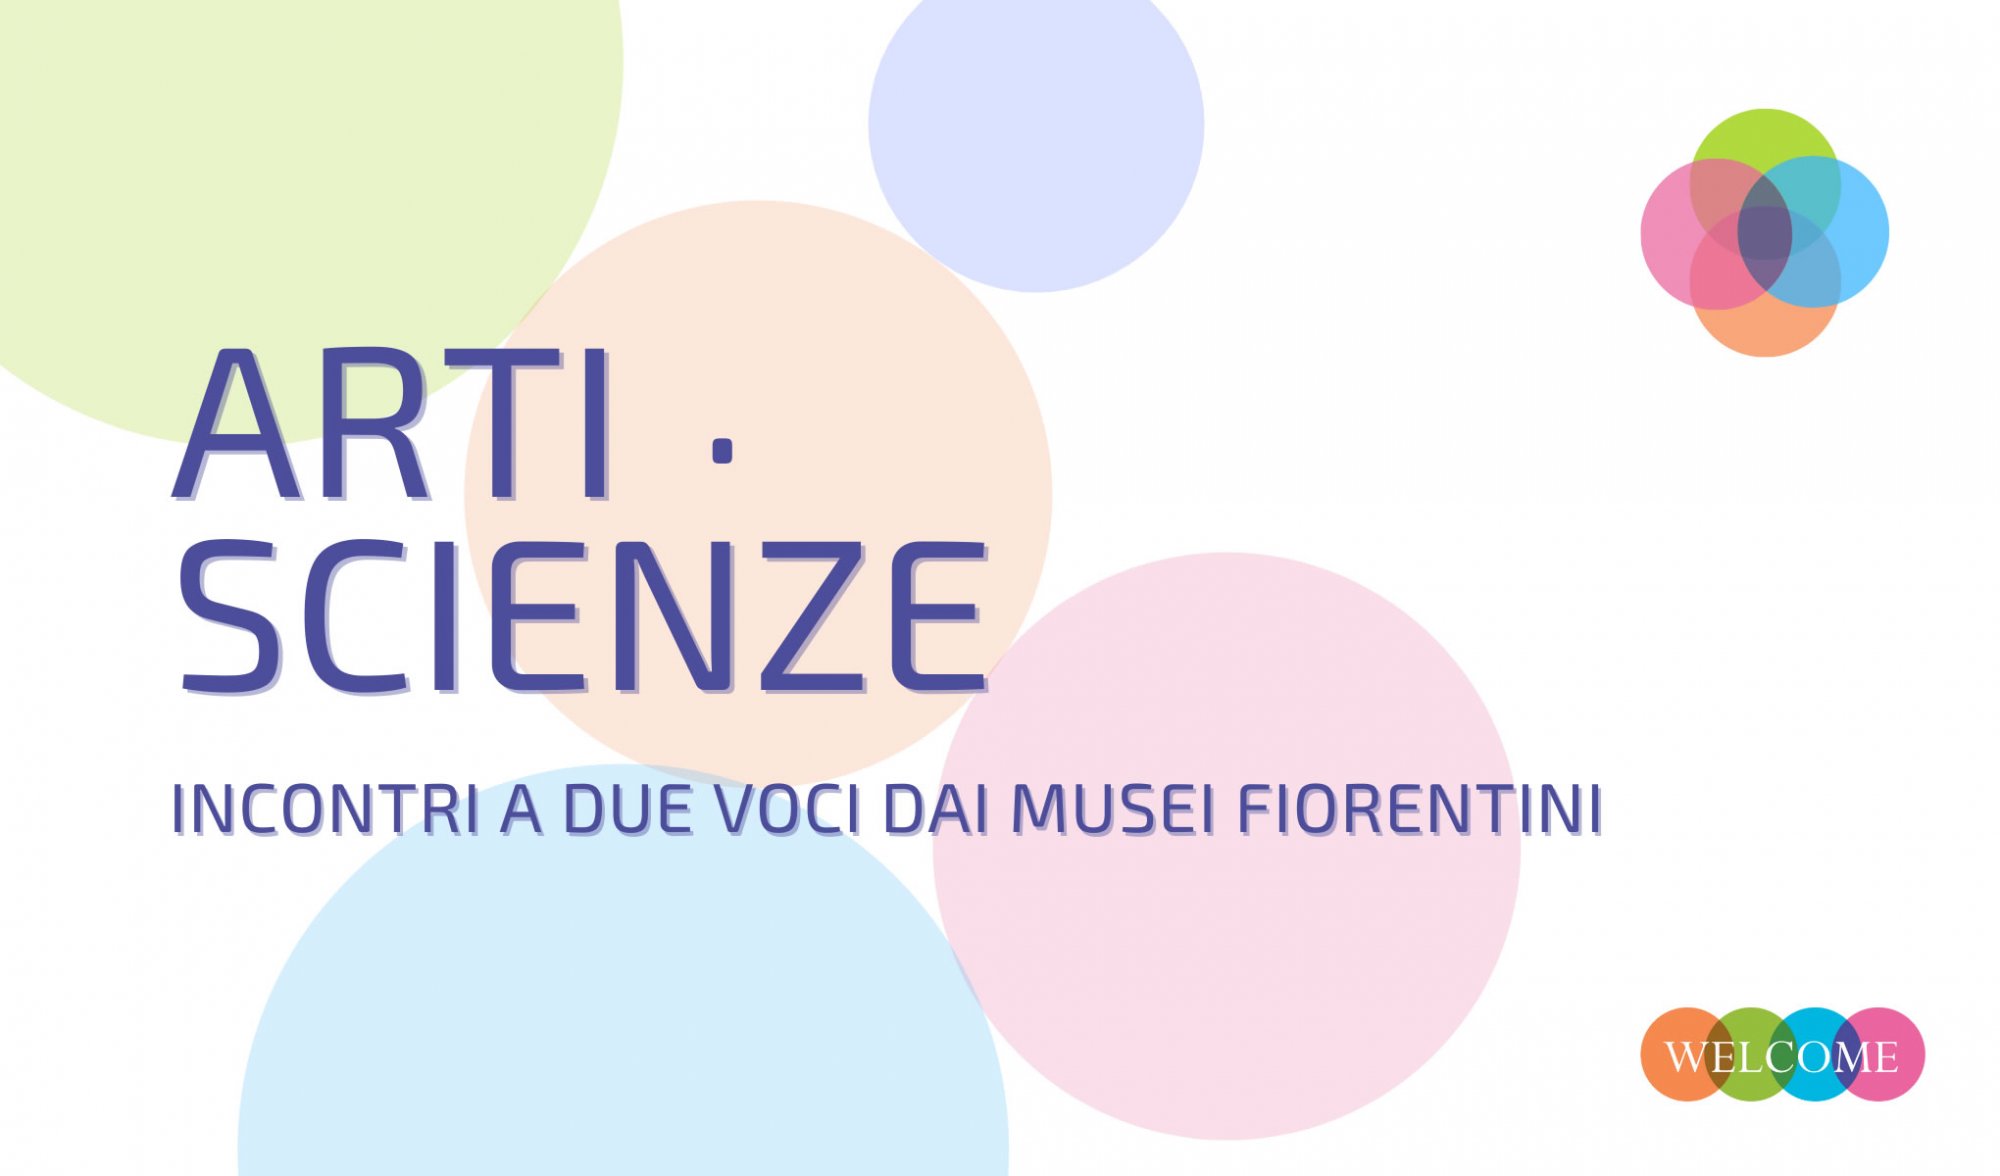 Incontri a due voci dai musei fiorentini